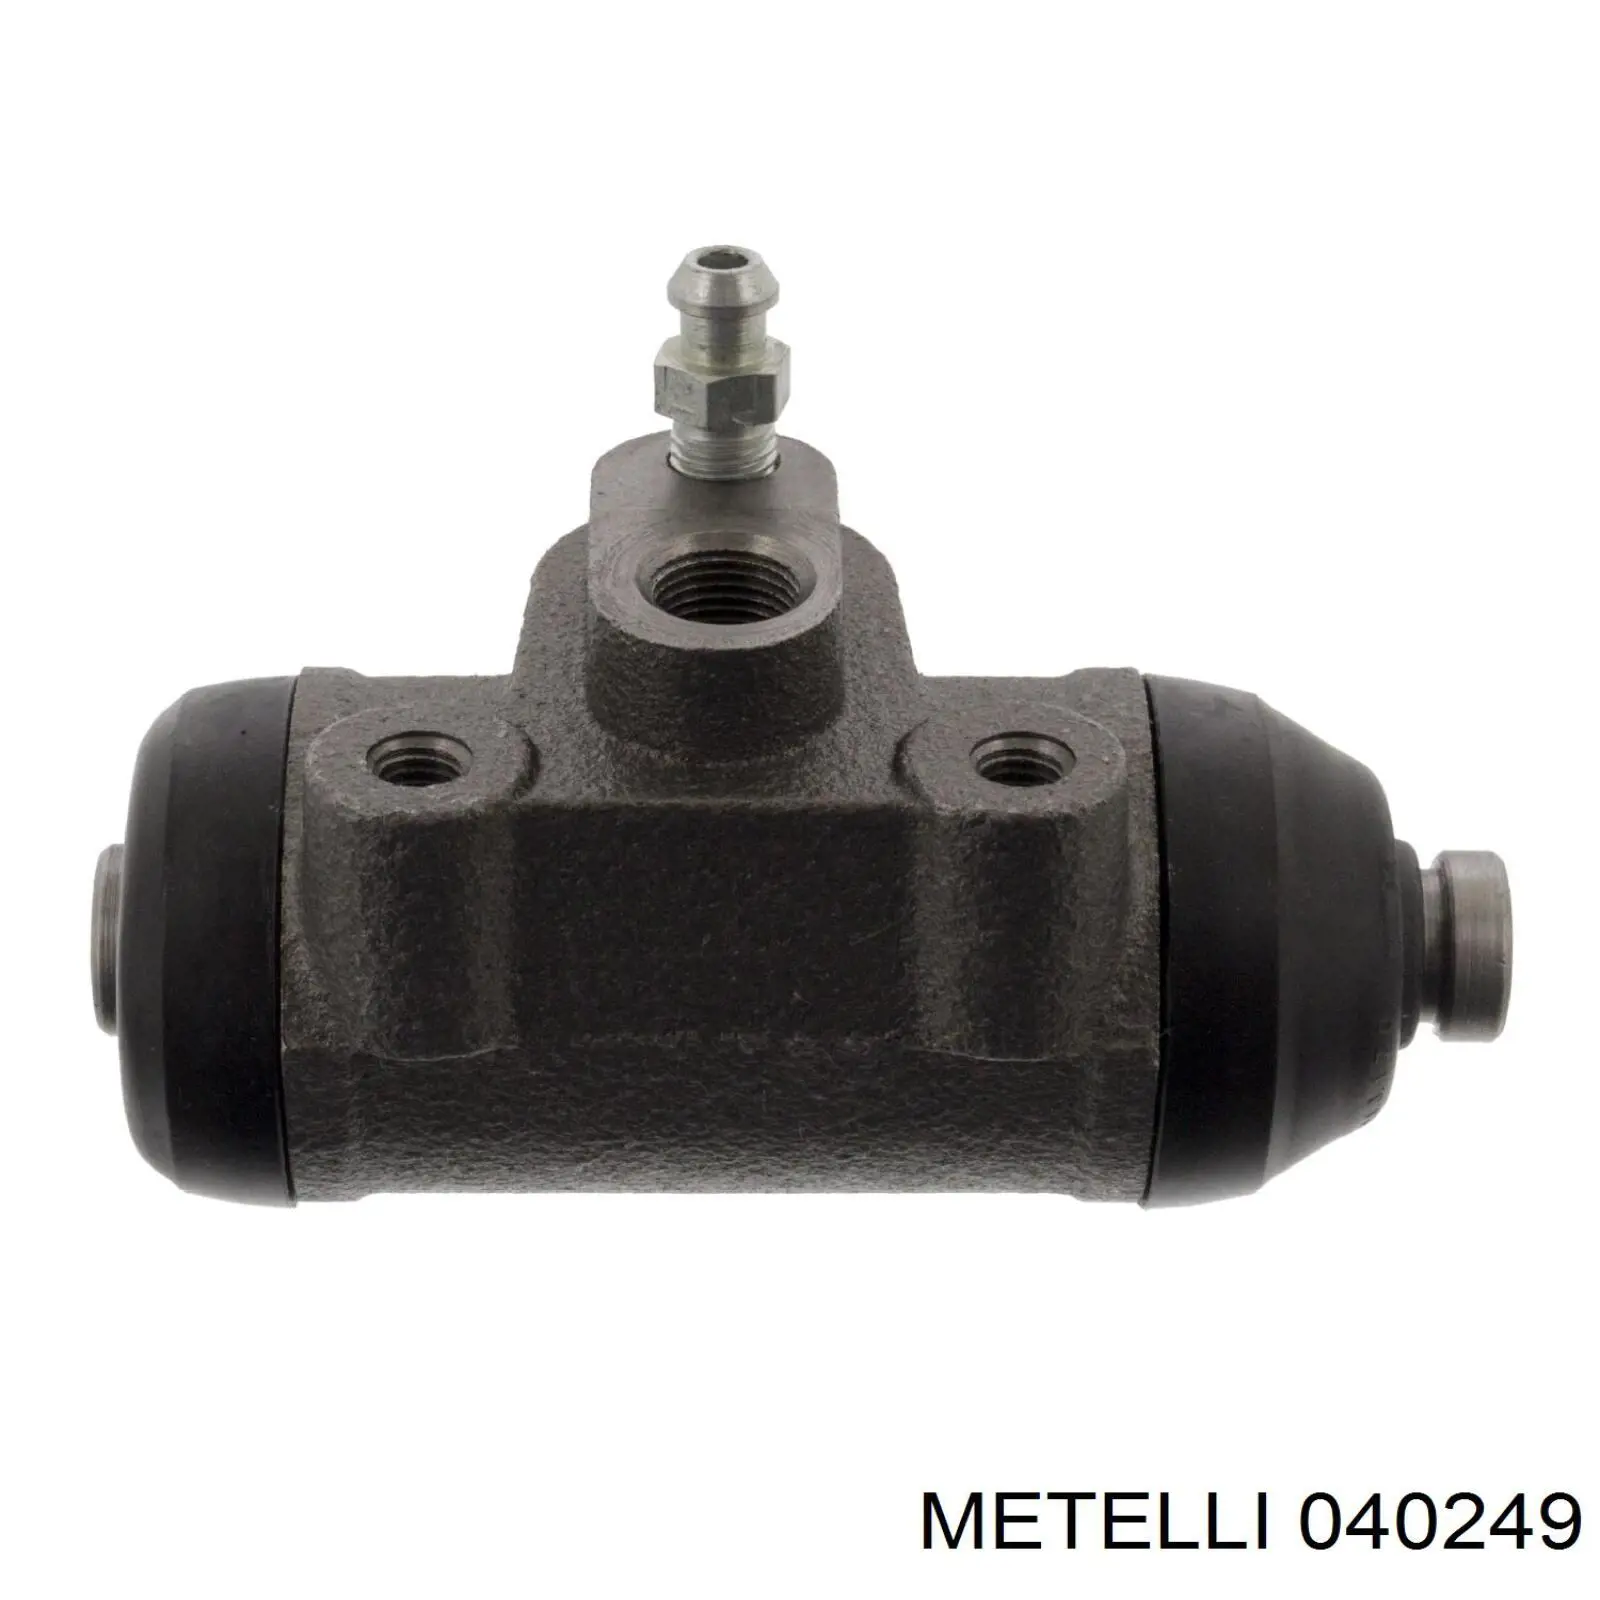 04-0249 Metelli cilindro de freno de rueda trasero